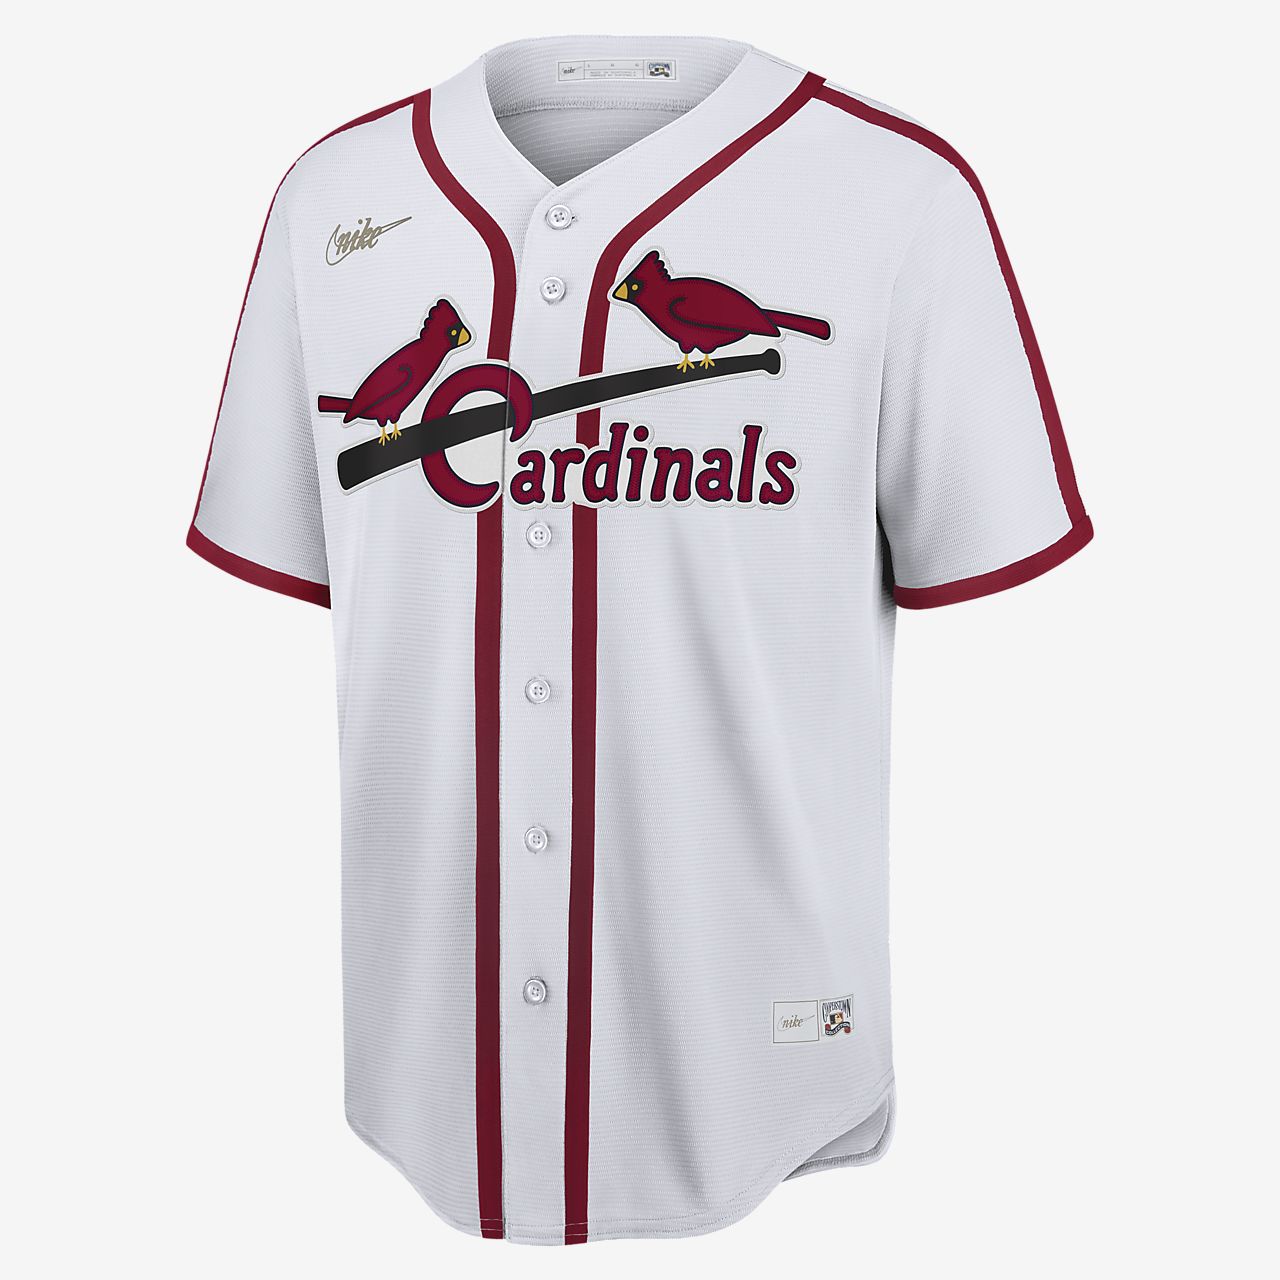 اين يباع كلور المسابح cardinals baseball jersey cheap Off 67% - www.gmcanantnag.net اين يباع كلور المسابح